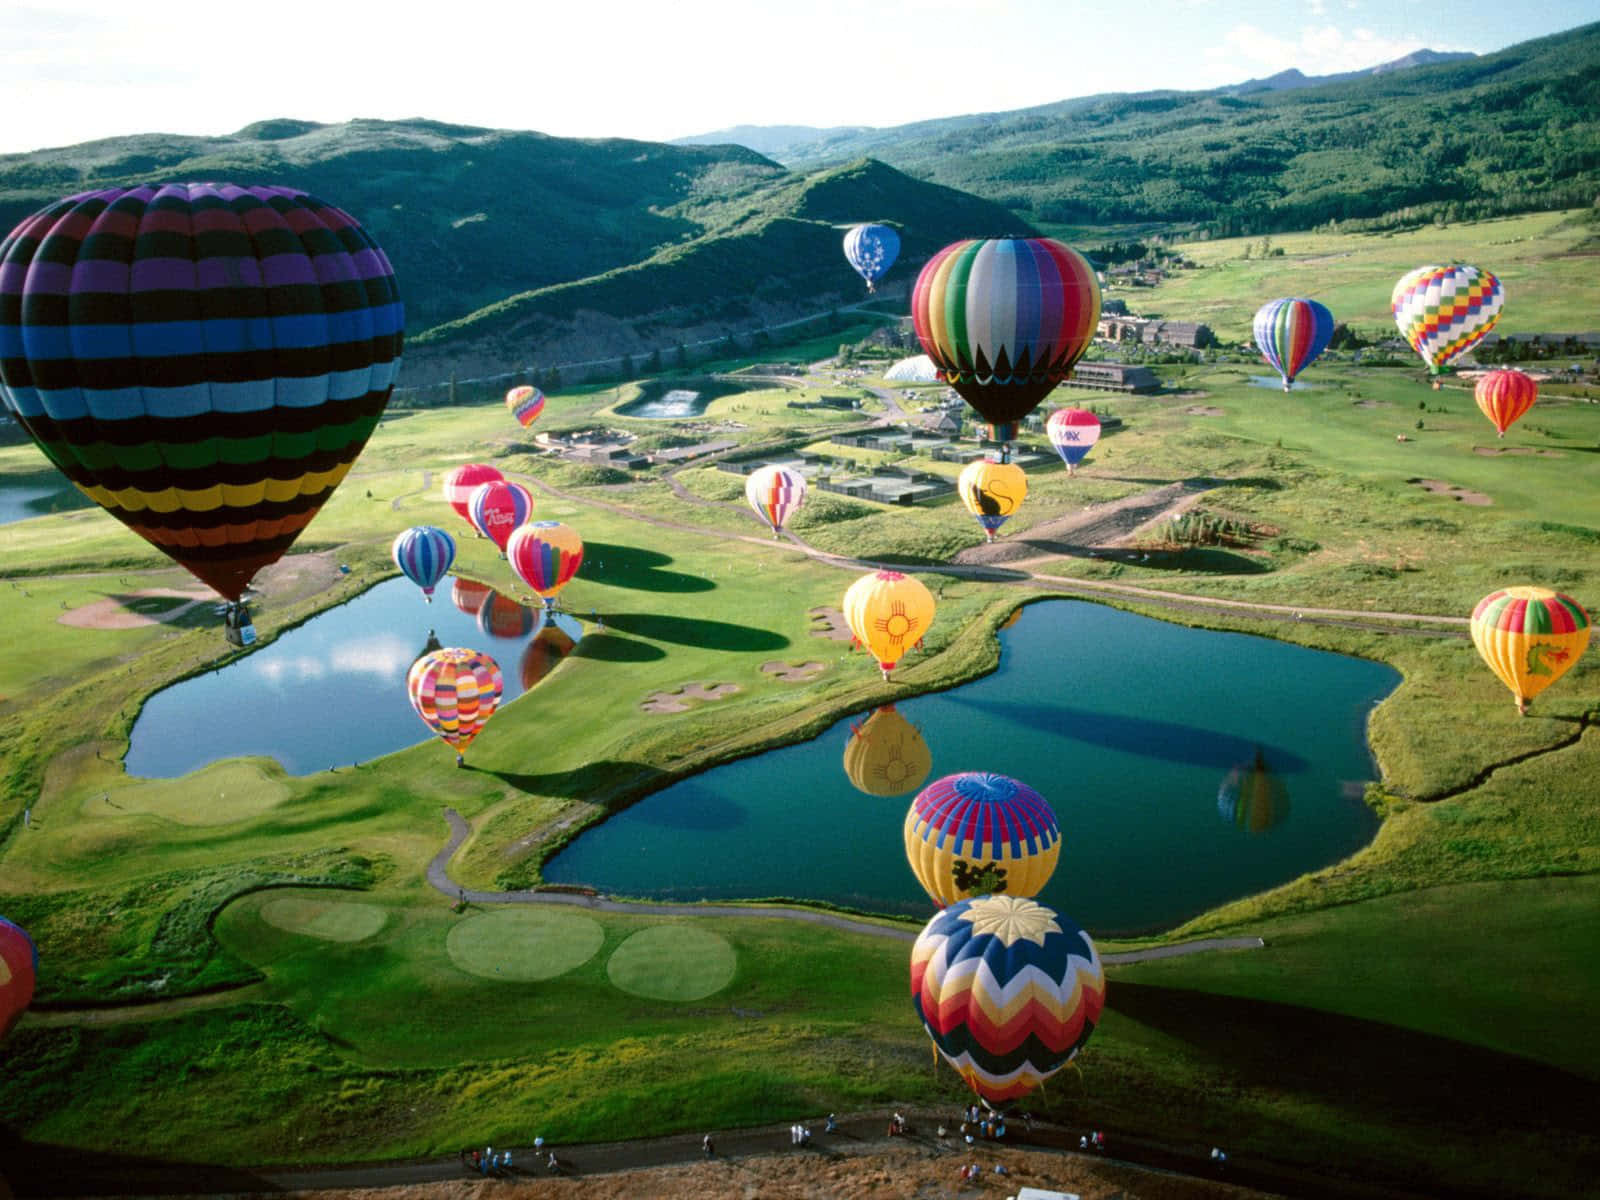 Pinterestvoando Alto! Leve Seus Sonhos Para Alturas Mais Altas Com Um Passeio De Balão De Ar Quente.